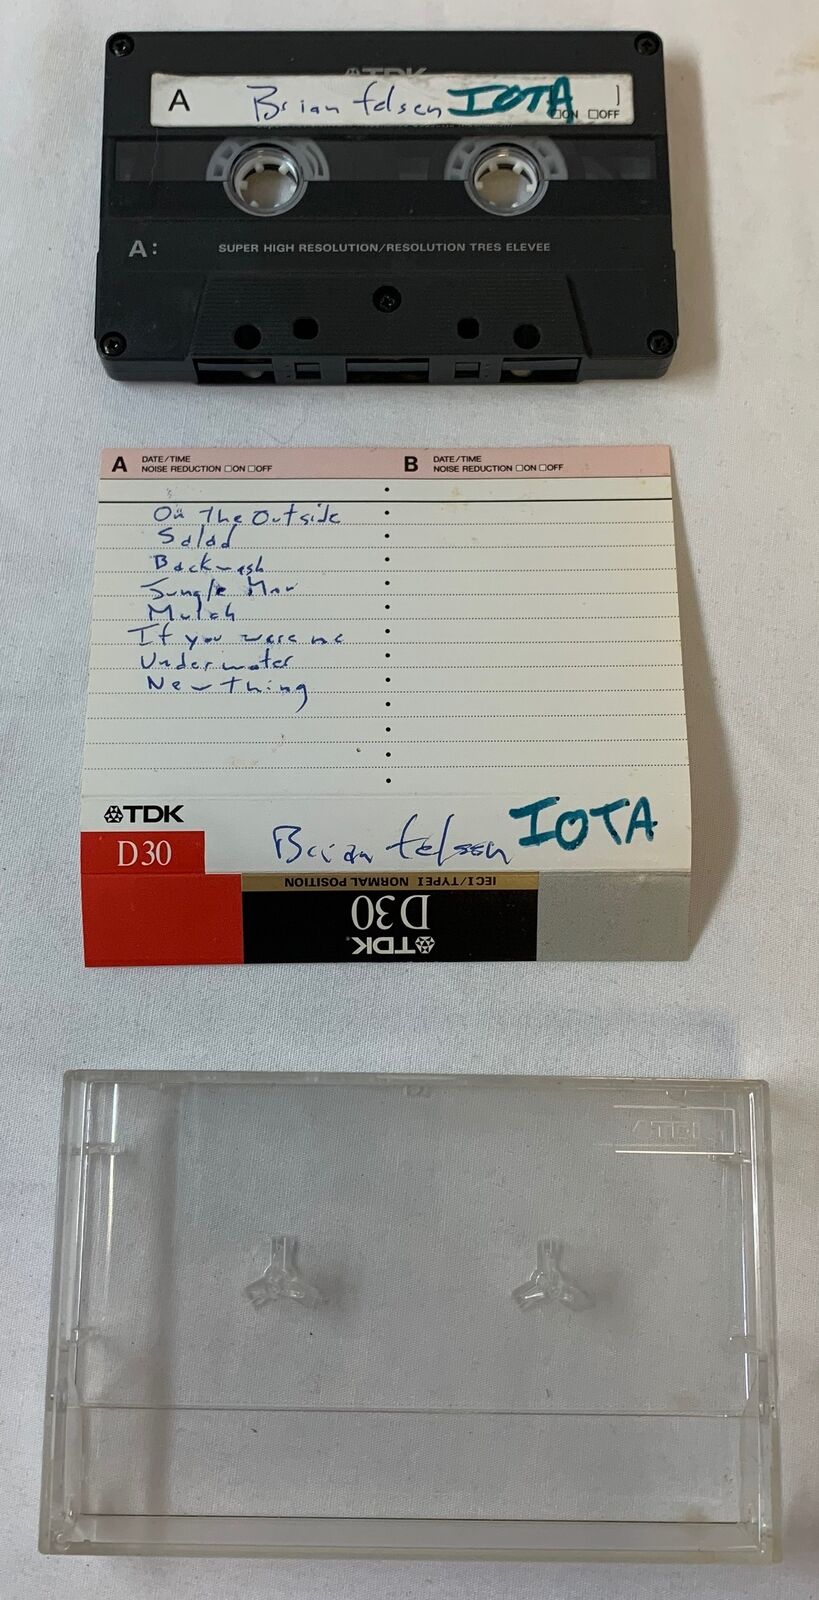 1990s cassette ~ BRIAN FELSEN ~ Iota